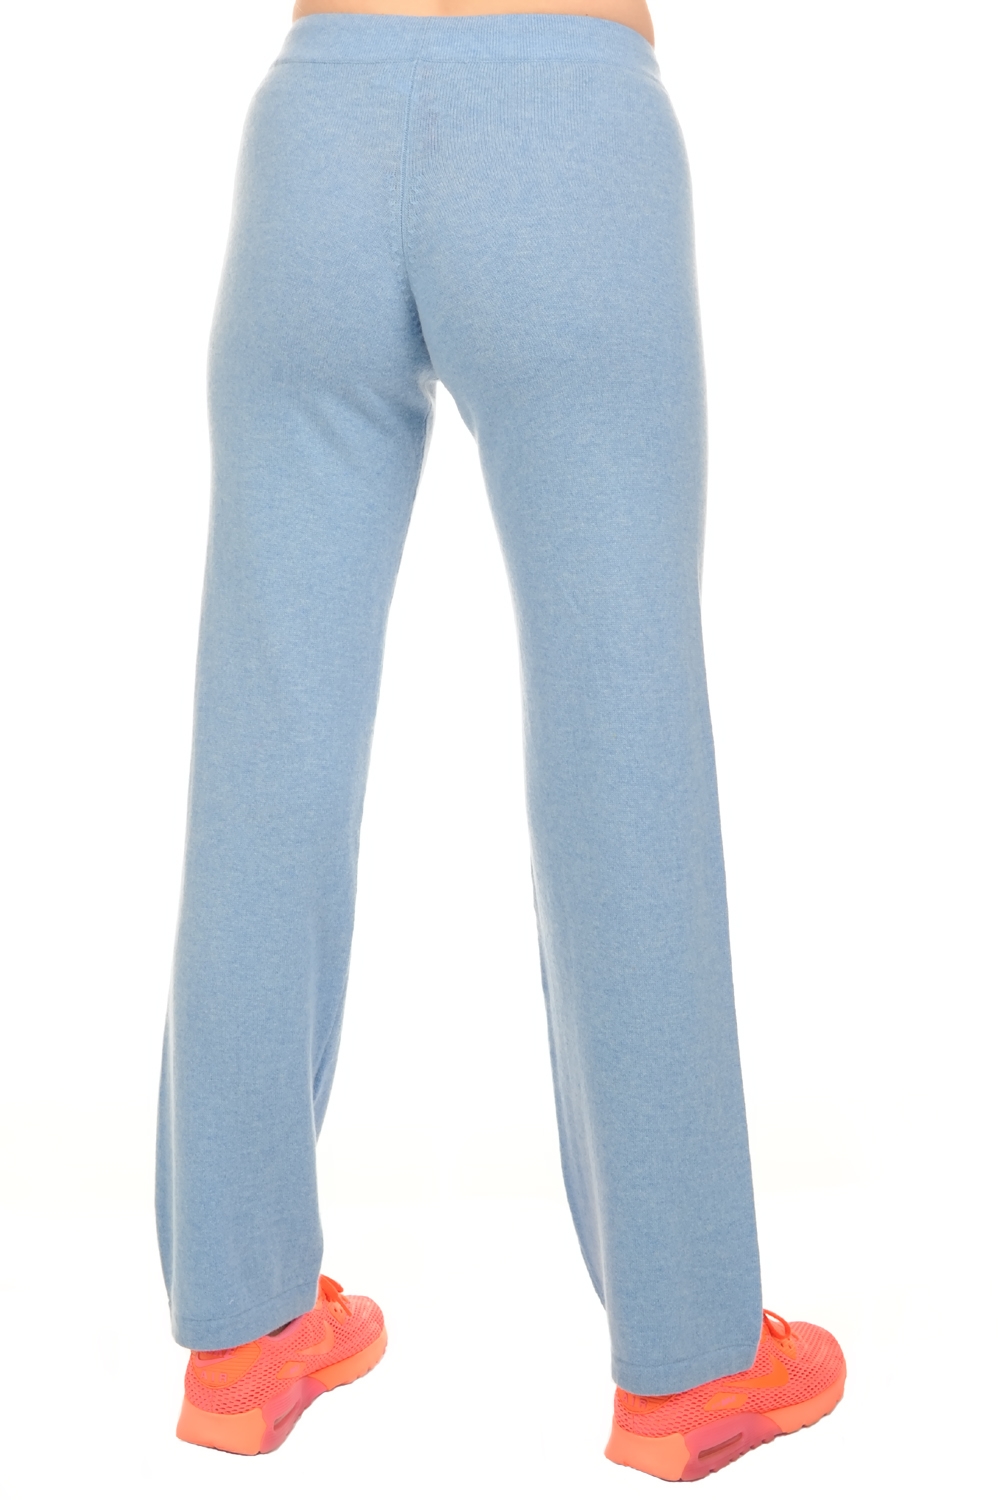 Kasjmier dames kasjmier broeken leggings malice chinees azuur blauw xl